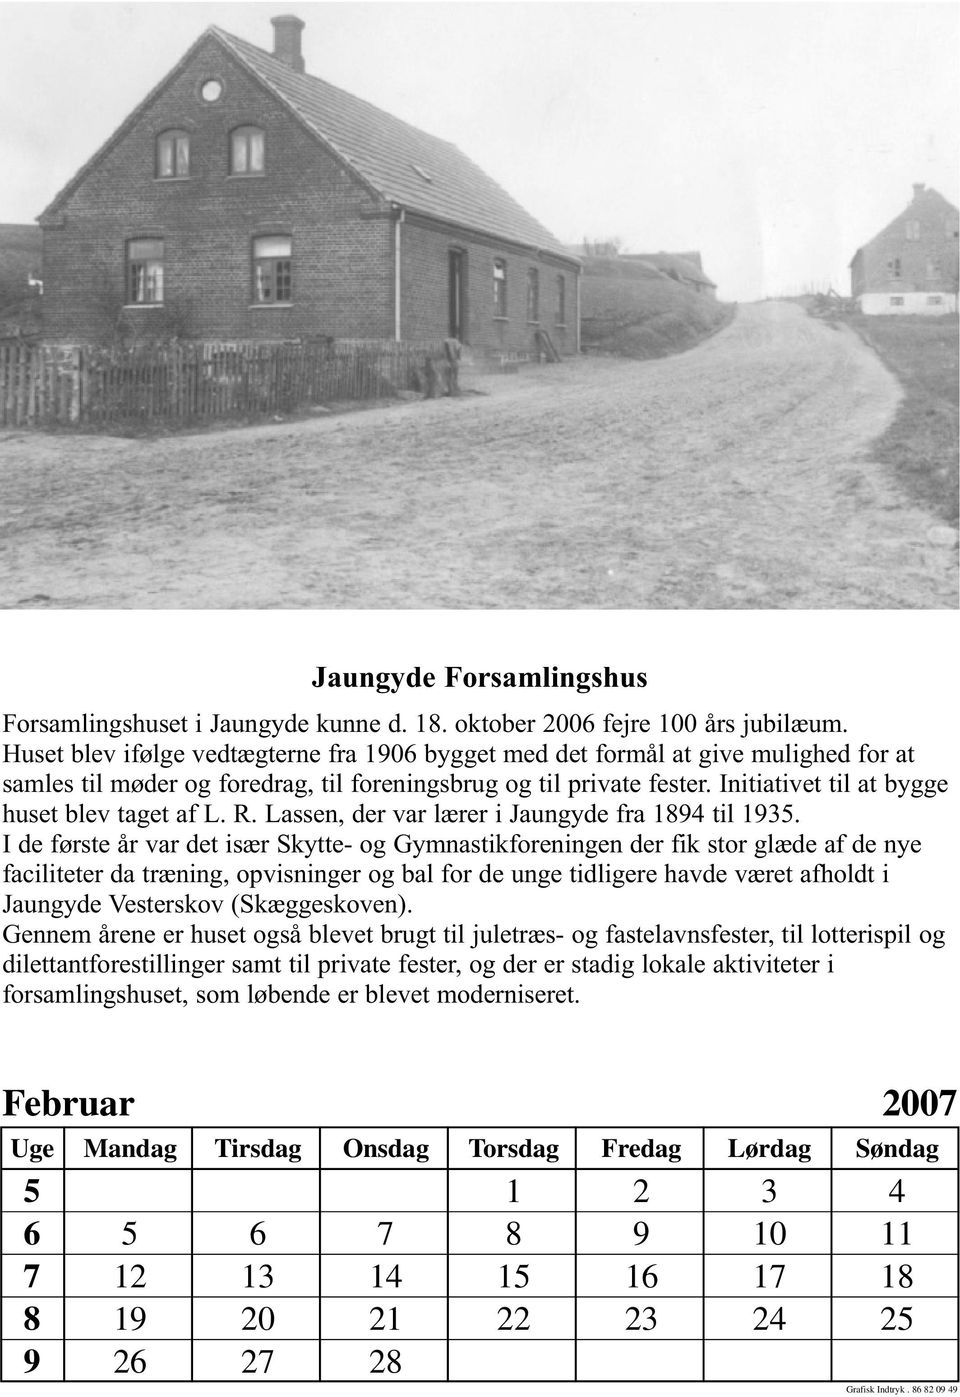 Initiativet til at bygge huset blev taget af L. R. Lassen, der var lærer i Jaungyde fra 1894 til 1935.